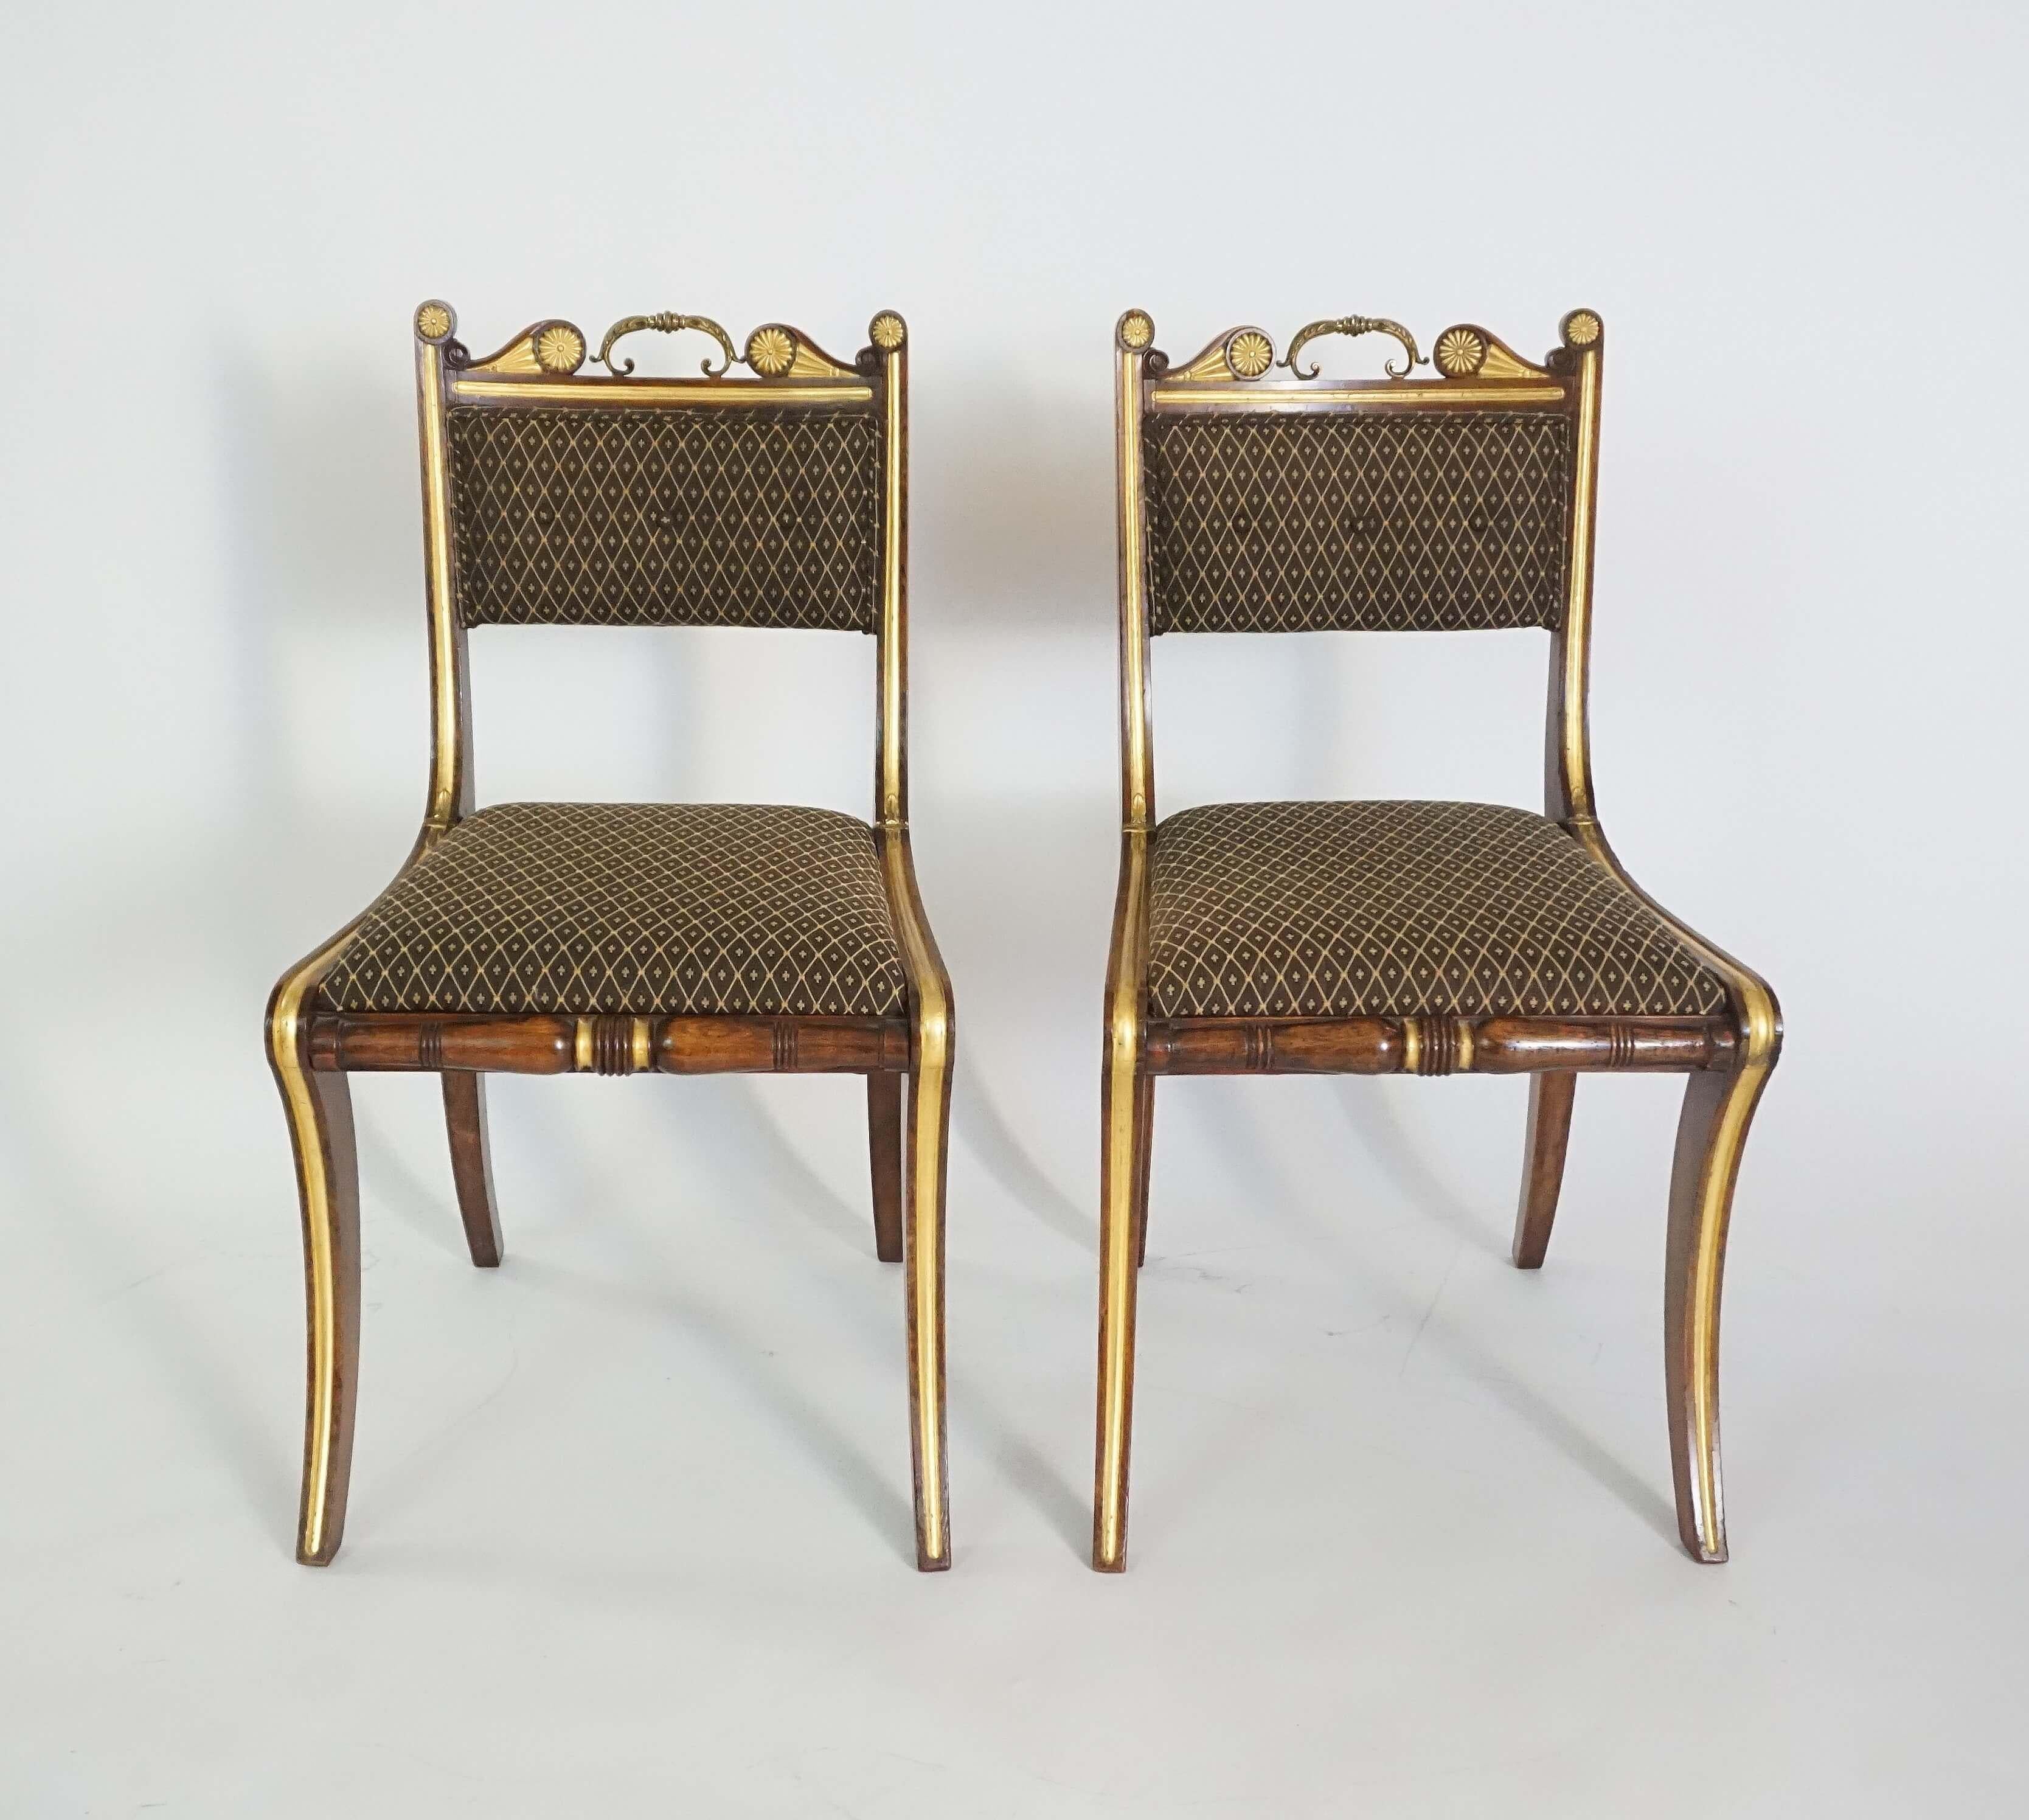 Ein Paar englische Beistellstühle aus der Regency-Zeit um 1815, die den renommierten Tischlern Morel & Hughes zugeschrieben werden, mit paketvergoldeten und vergoldeten Metallrahmen aus Palisander in 